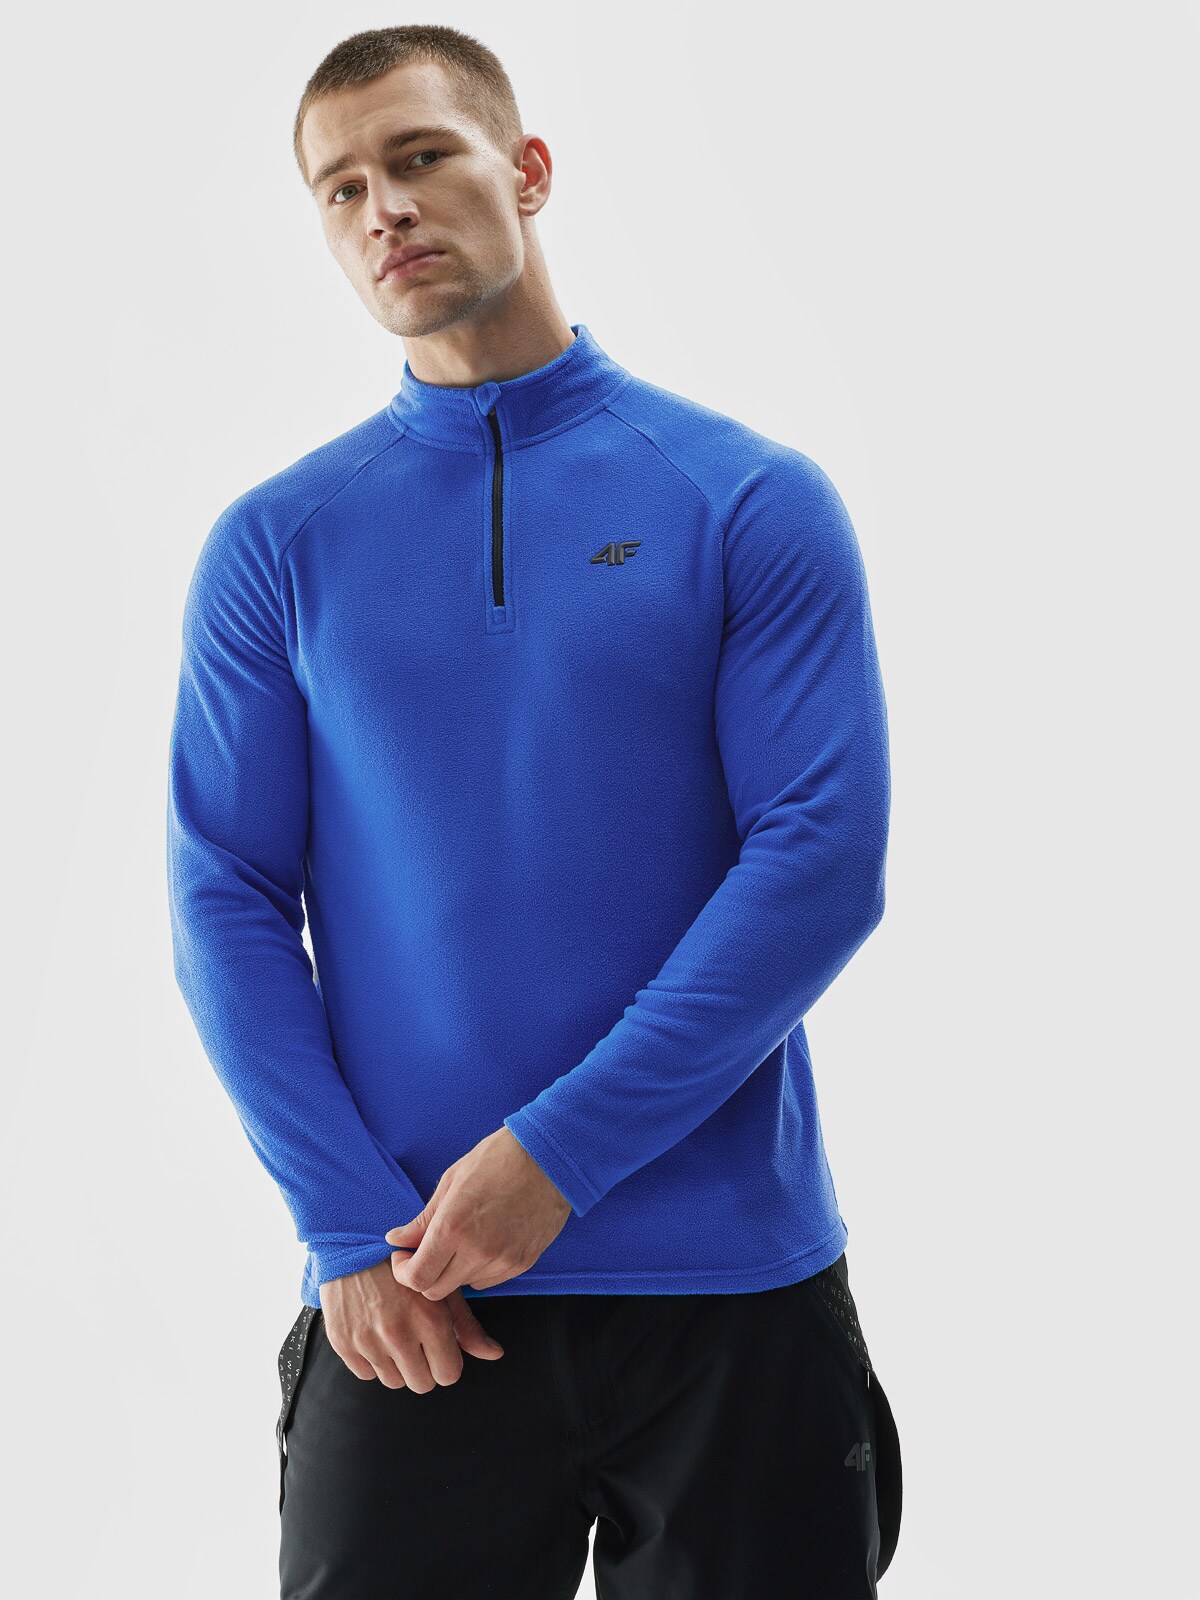 Lenjerie termoactivă din fleece (bluză) pentru bărbați - albastră-aprinsă